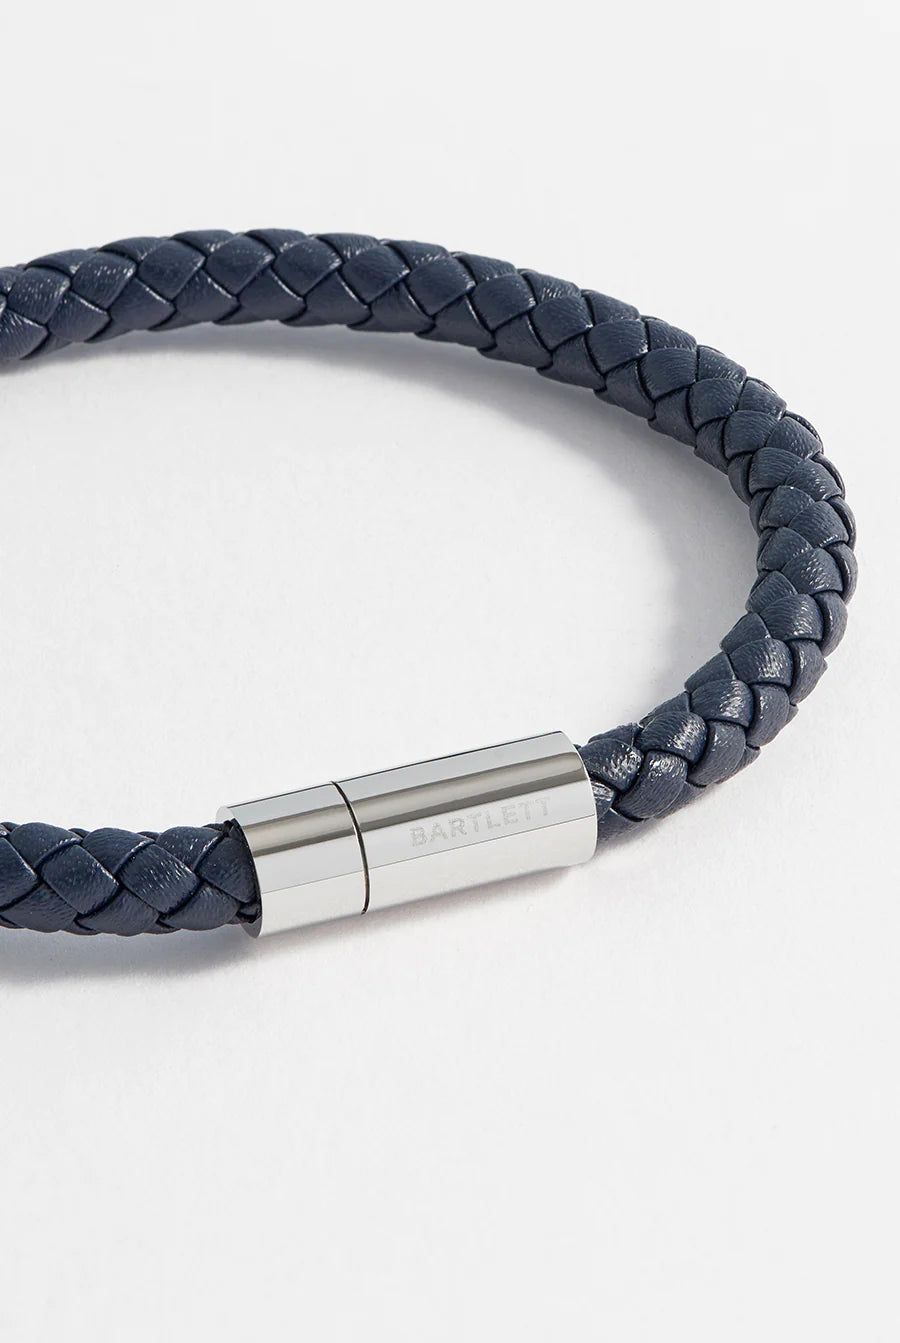 Men's Navy Leather Single Wrap Bracelet